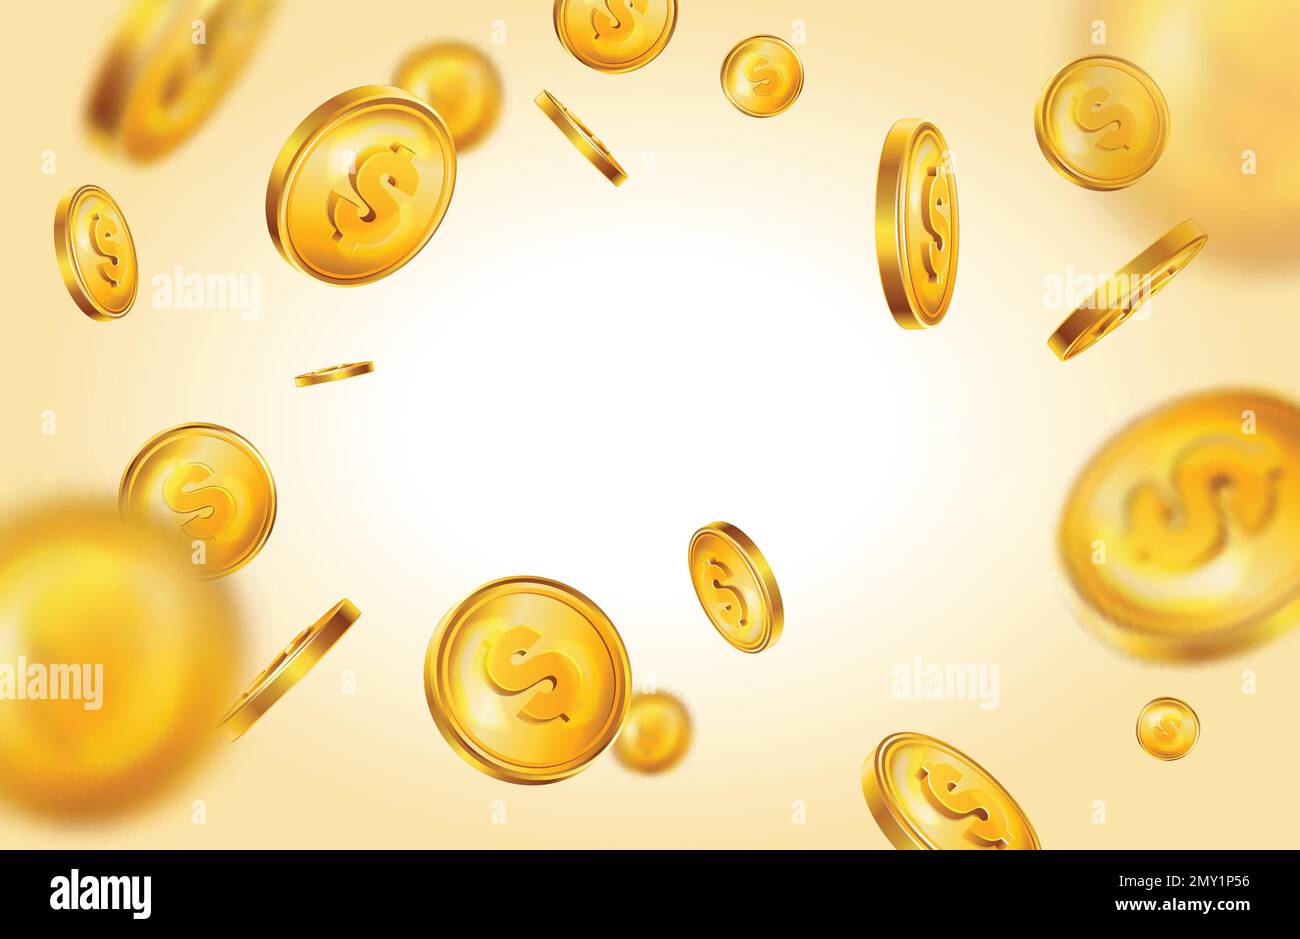 Realistiche composizioni di monete d'oro con una sorgente luminosa a gradiente luminoso circondata da soldi volanti con simboli del dollaro illustrazione vettoriale Illustrazione Vettoriale